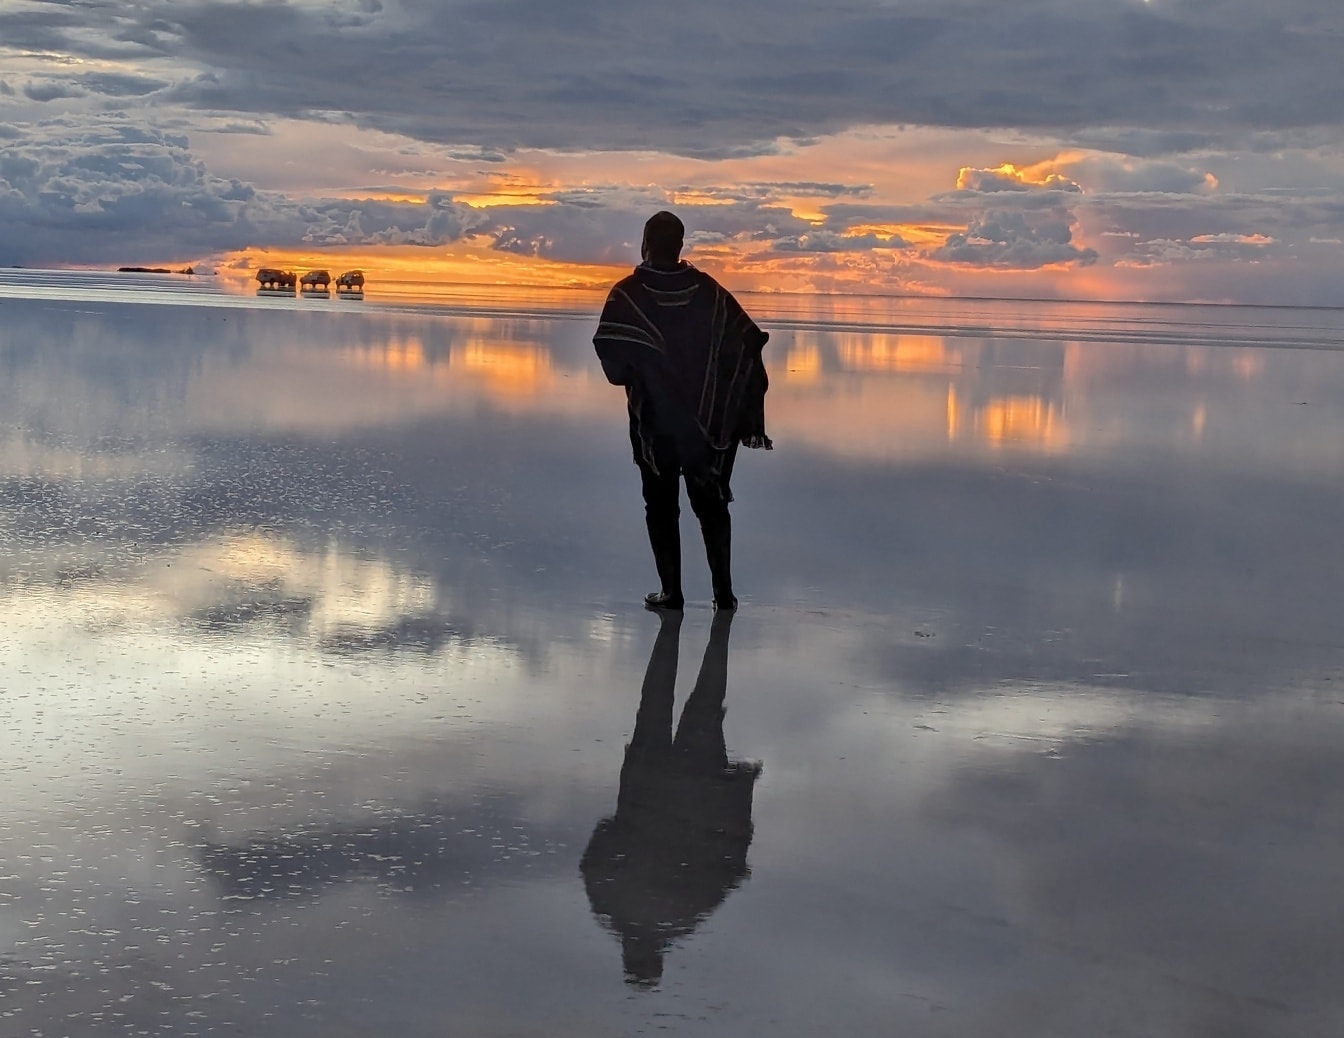 Om stând pe o apă cu un apus de soare frumos în fundal, reflectând pe o suprafață de apă